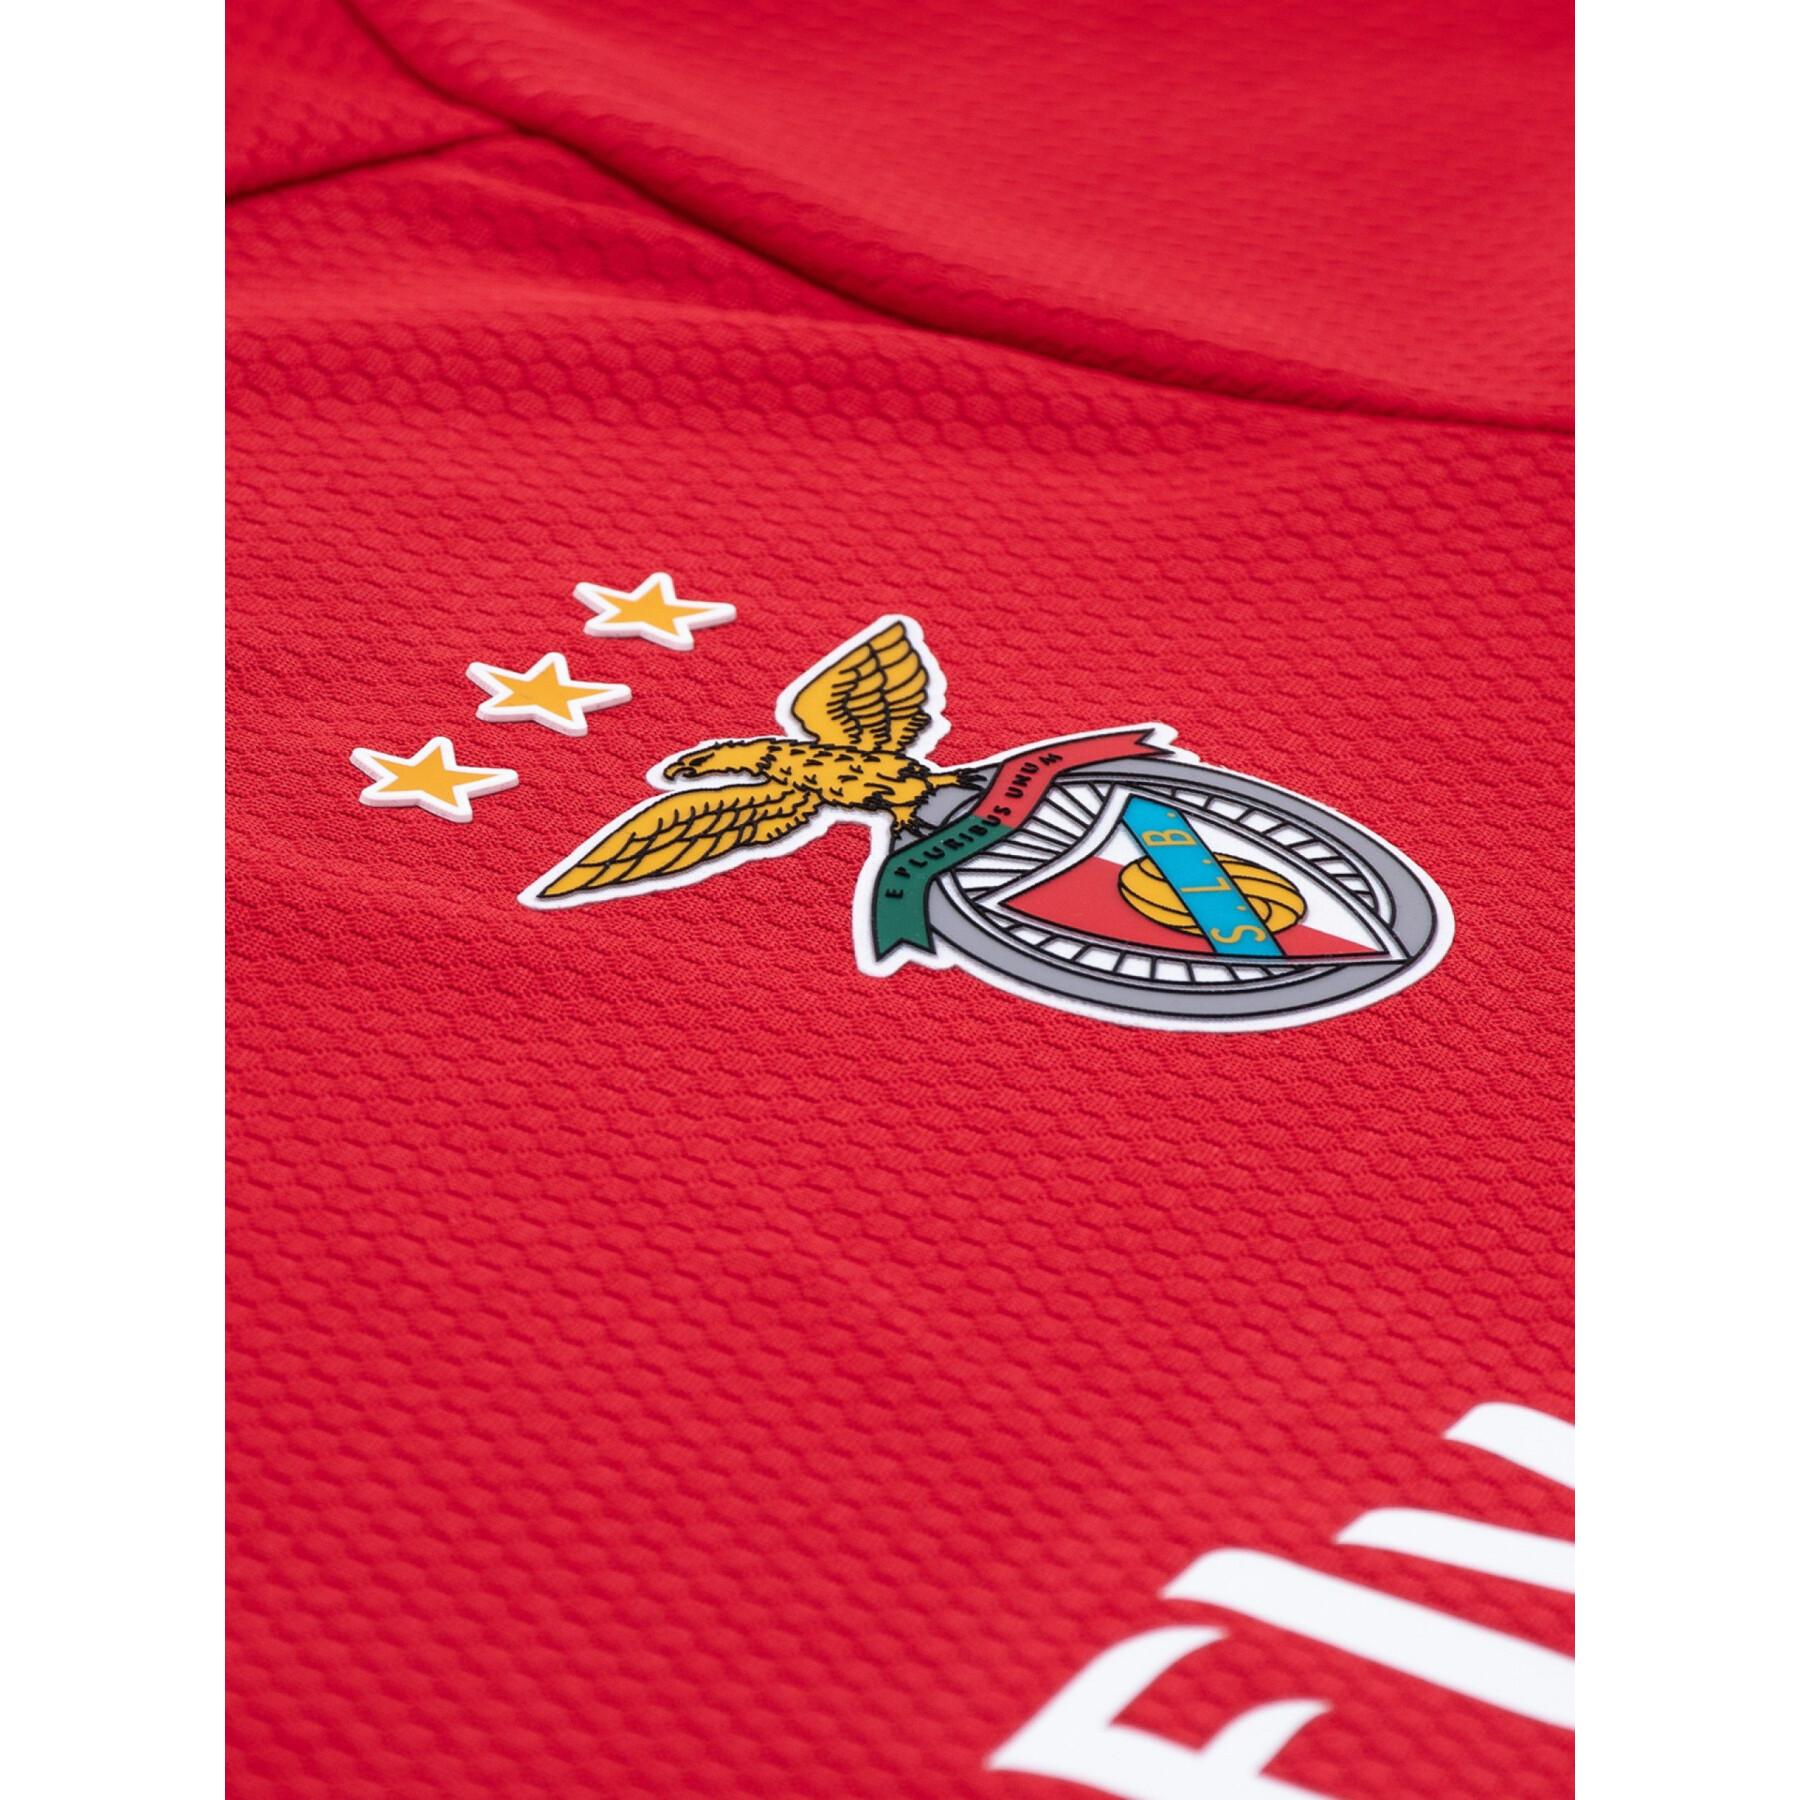 Mini kit de casa Benfica Lisbonne 2019/20